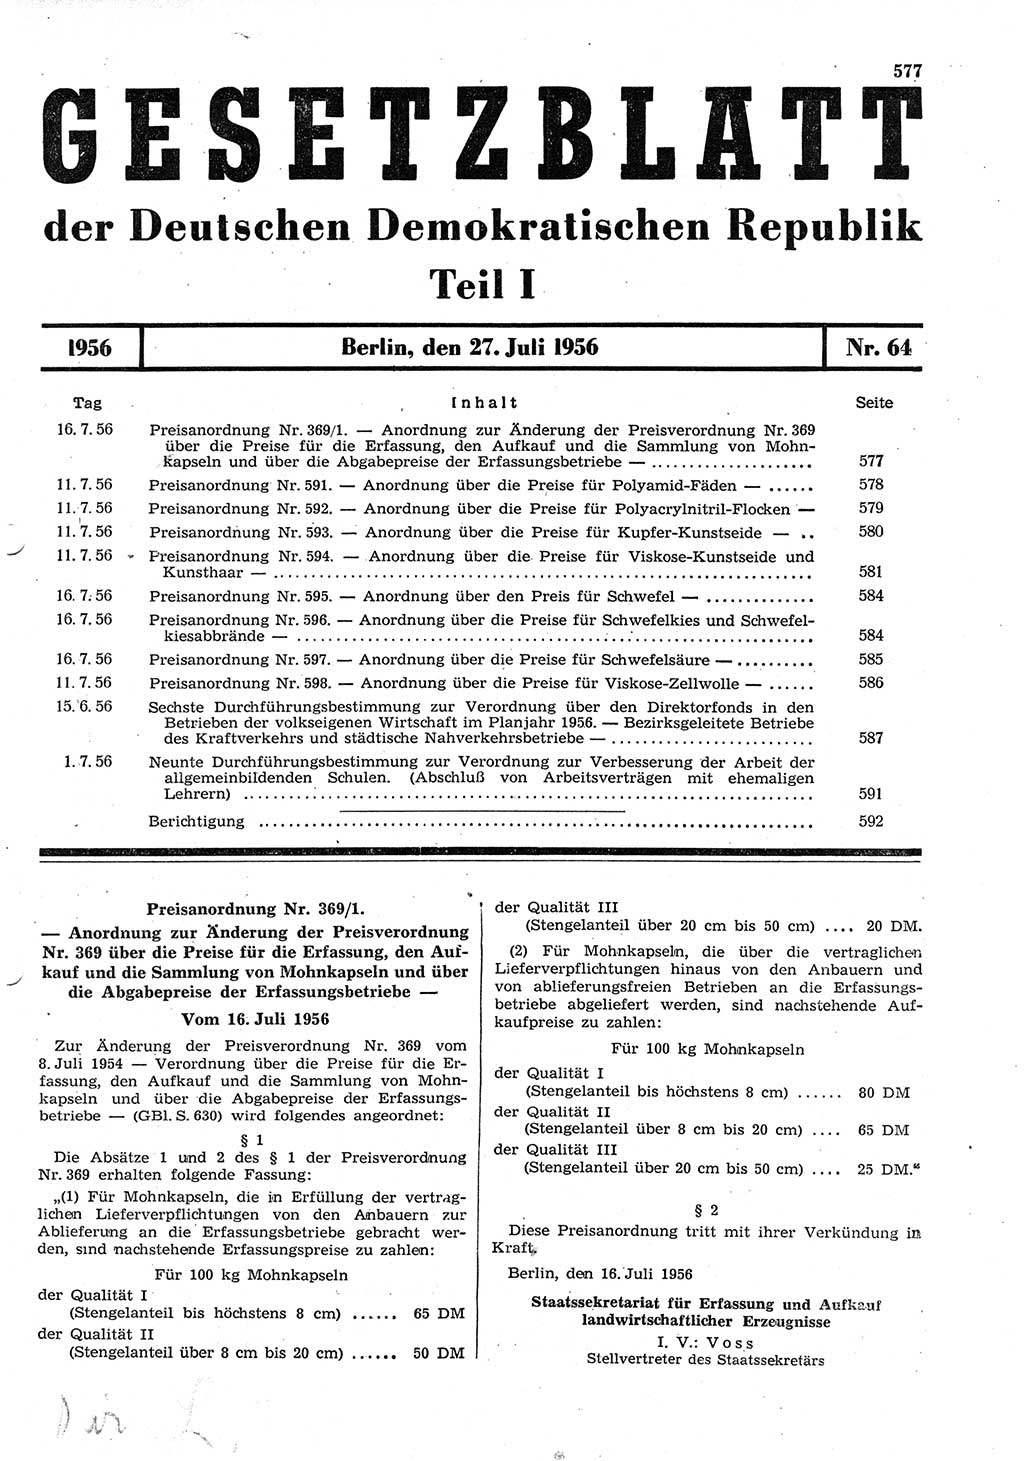 Gesetzblatt (GBl.) der Deutschen Demokratischen Republik (DDR) Teil Ⅰ 1956, Seite 577 (GBl. DDR Ⅰ 1956, S. 577)